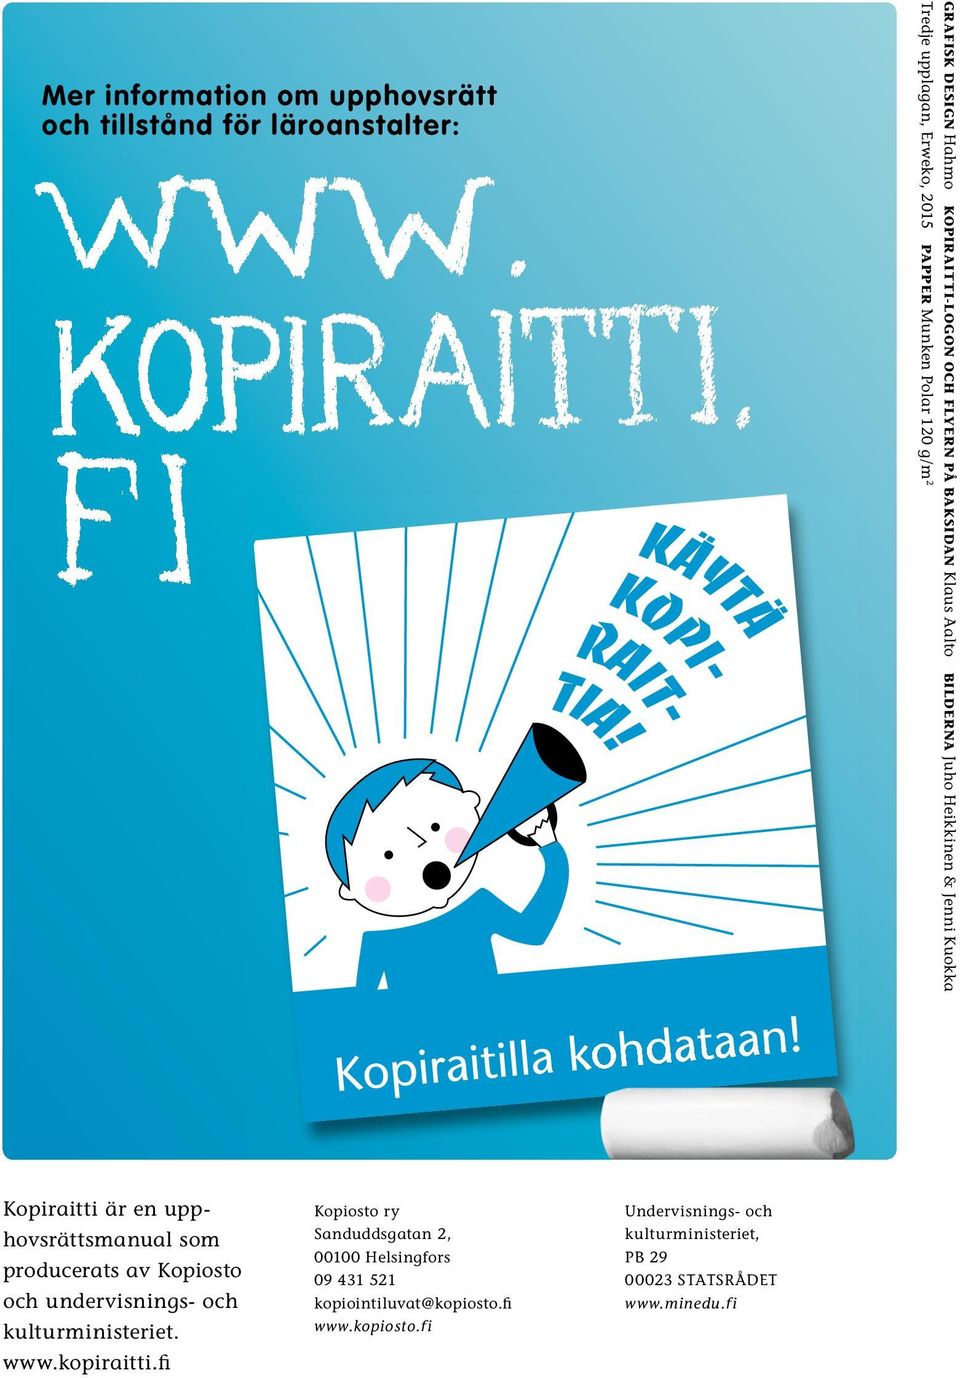 upphovsrättsmanual som producerats av Kopiosto och undervisnings- och kulturministeriet. www.kopiraitti.